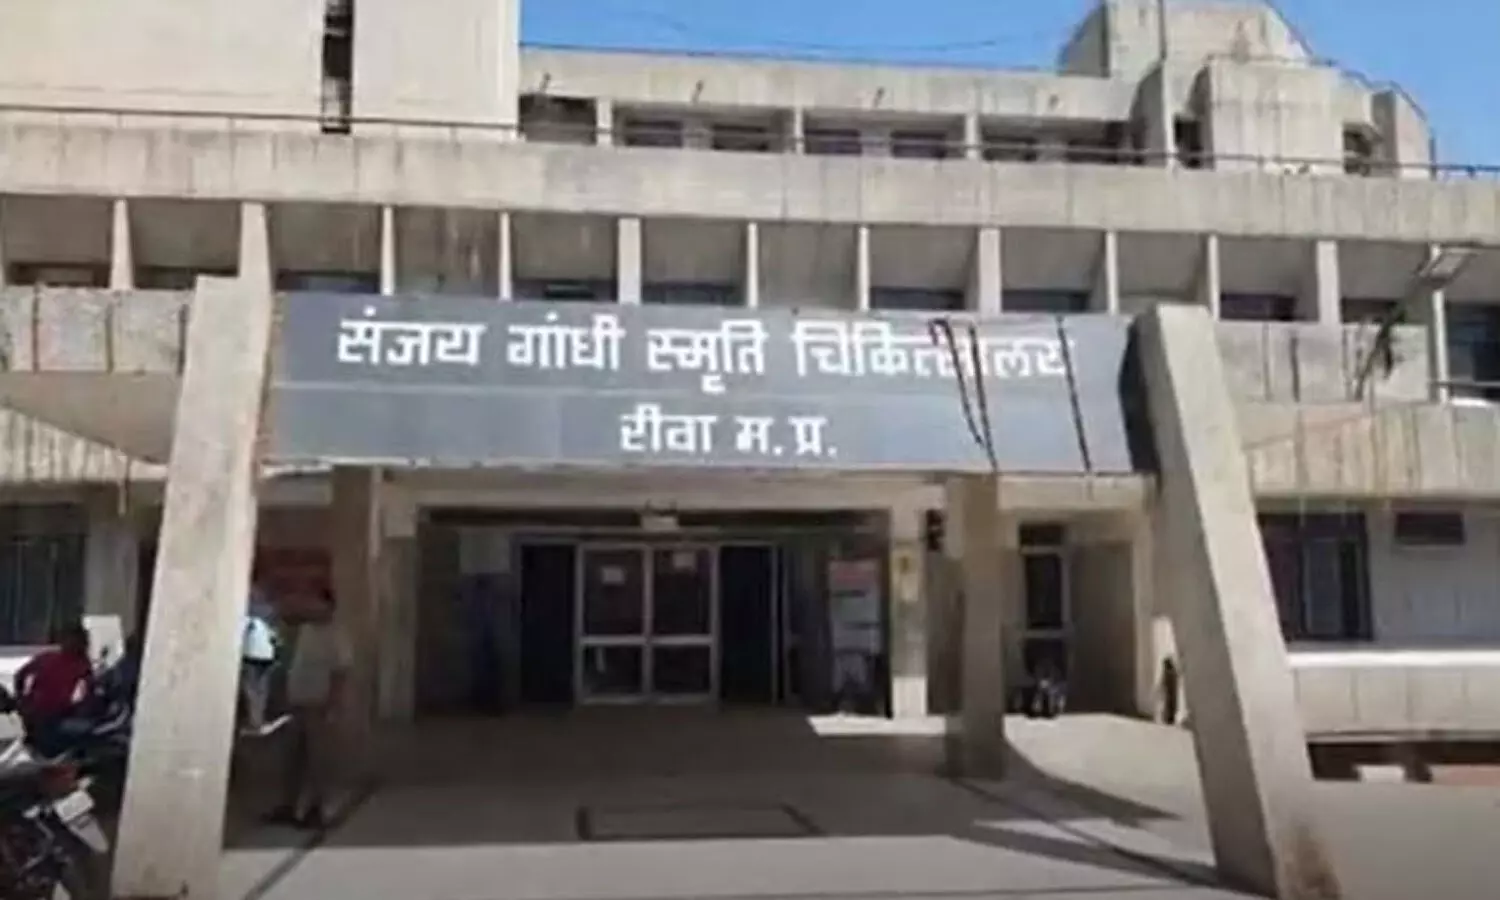 SGMH Rewa: विंध्य के सबसे बड़े संजय गांधी अस्पताल रीवा में स्टाफ नर्स के रिक्त हैं 270 पद, परेशान होते हैं मरीज